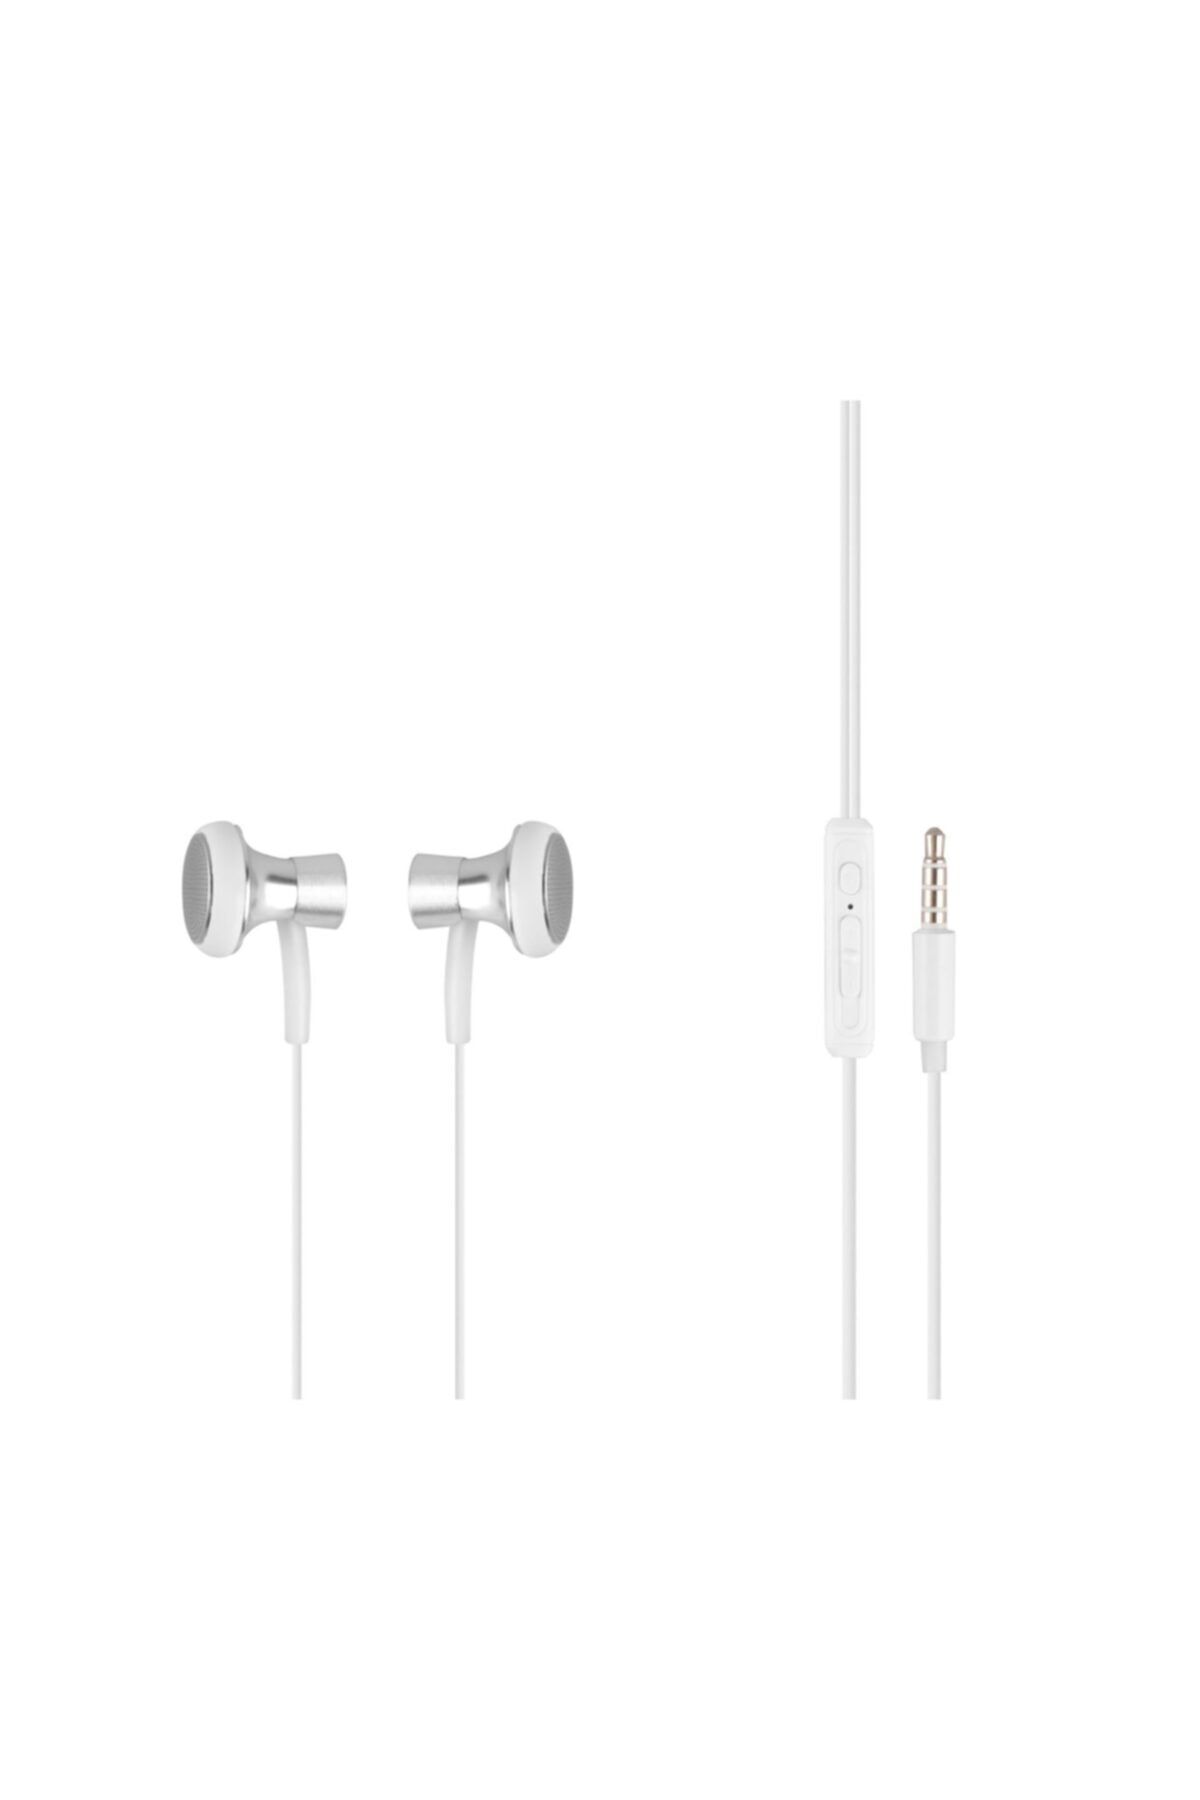 MF PRODUCT 0153 Mikrofonlu Kablolu Kulak Içi Kulaklık Beyaz